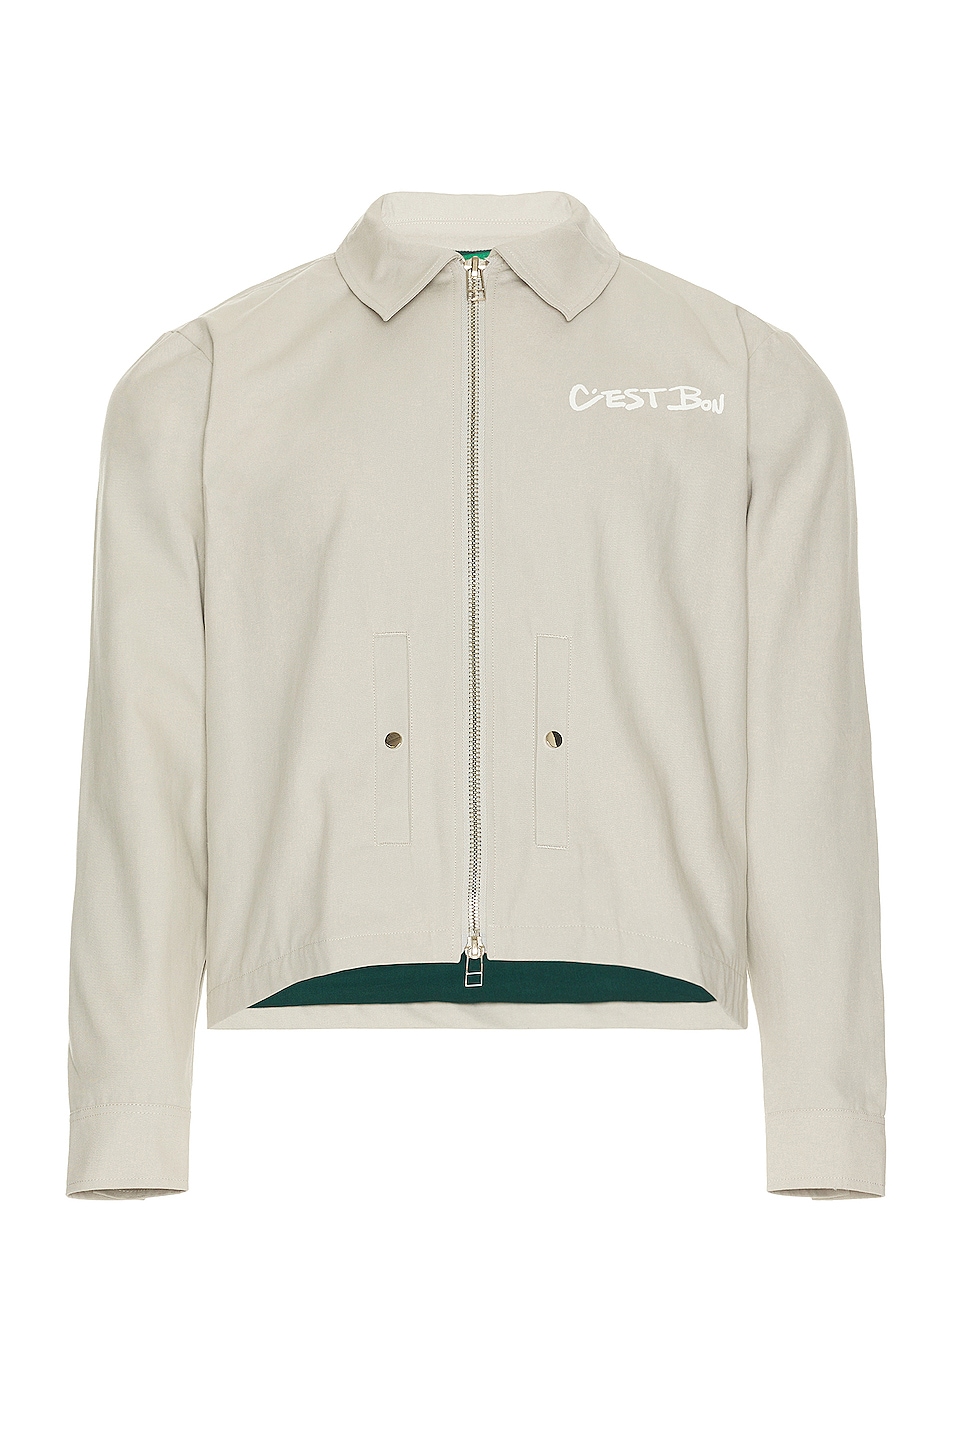 Image 1 of Cest Bon Work Jacket in Light Grey